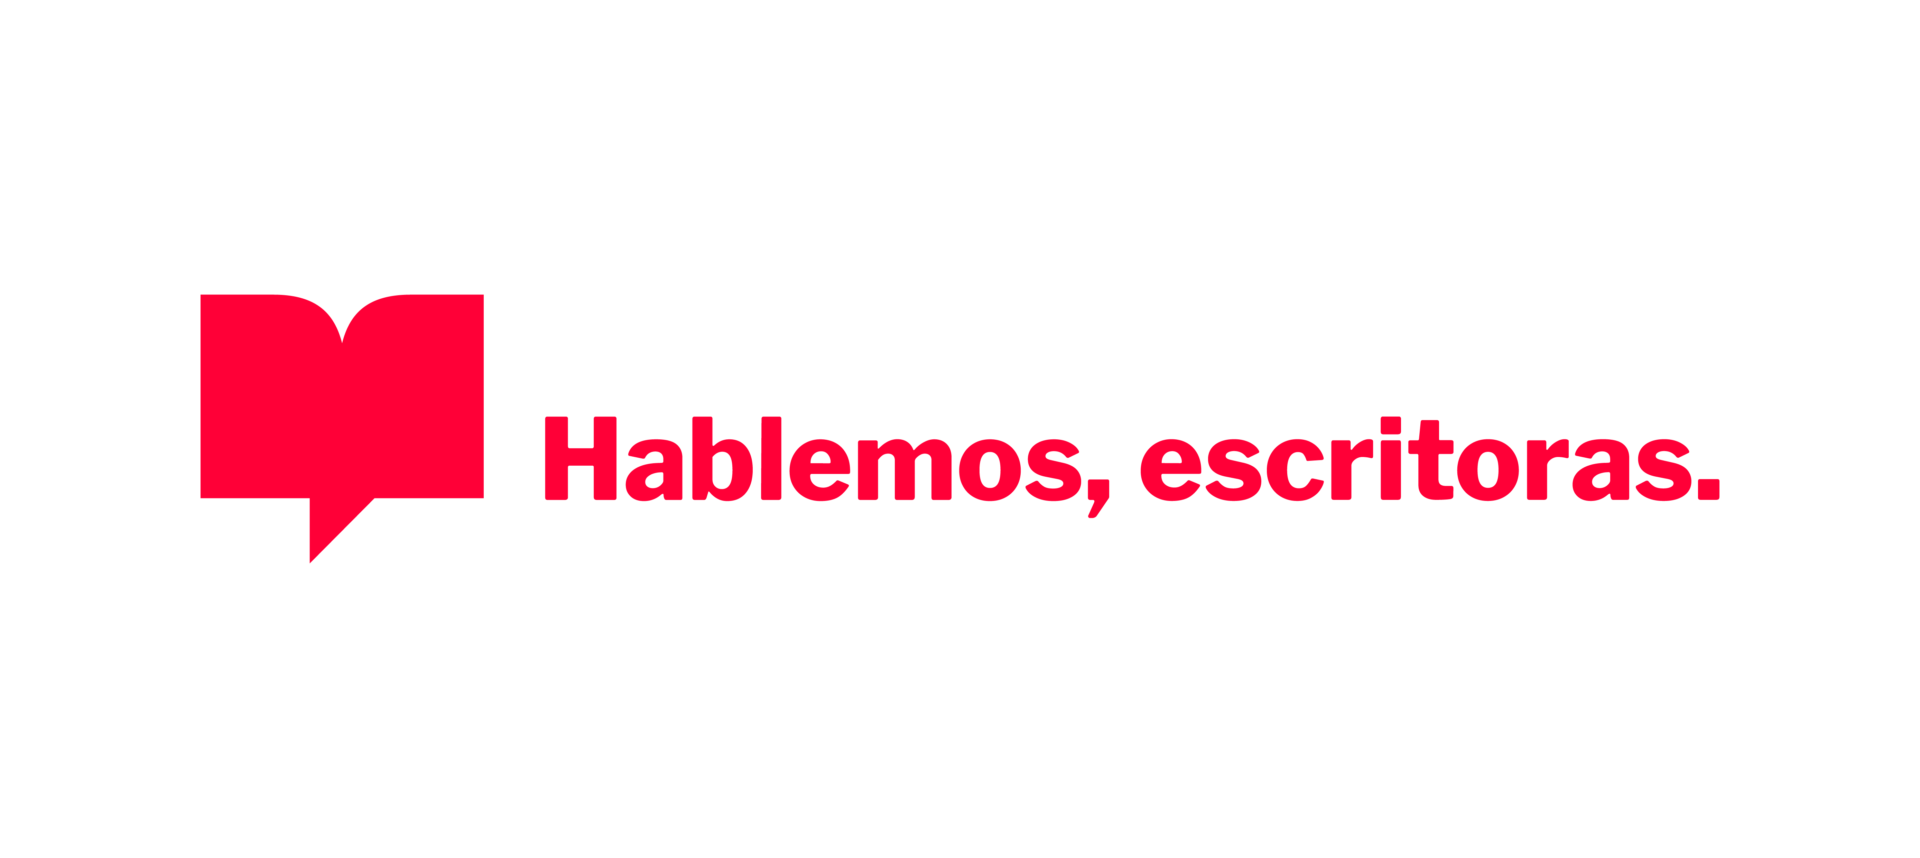 Hablemos, escritoras (Episodio 456): Esmeralda Santiago